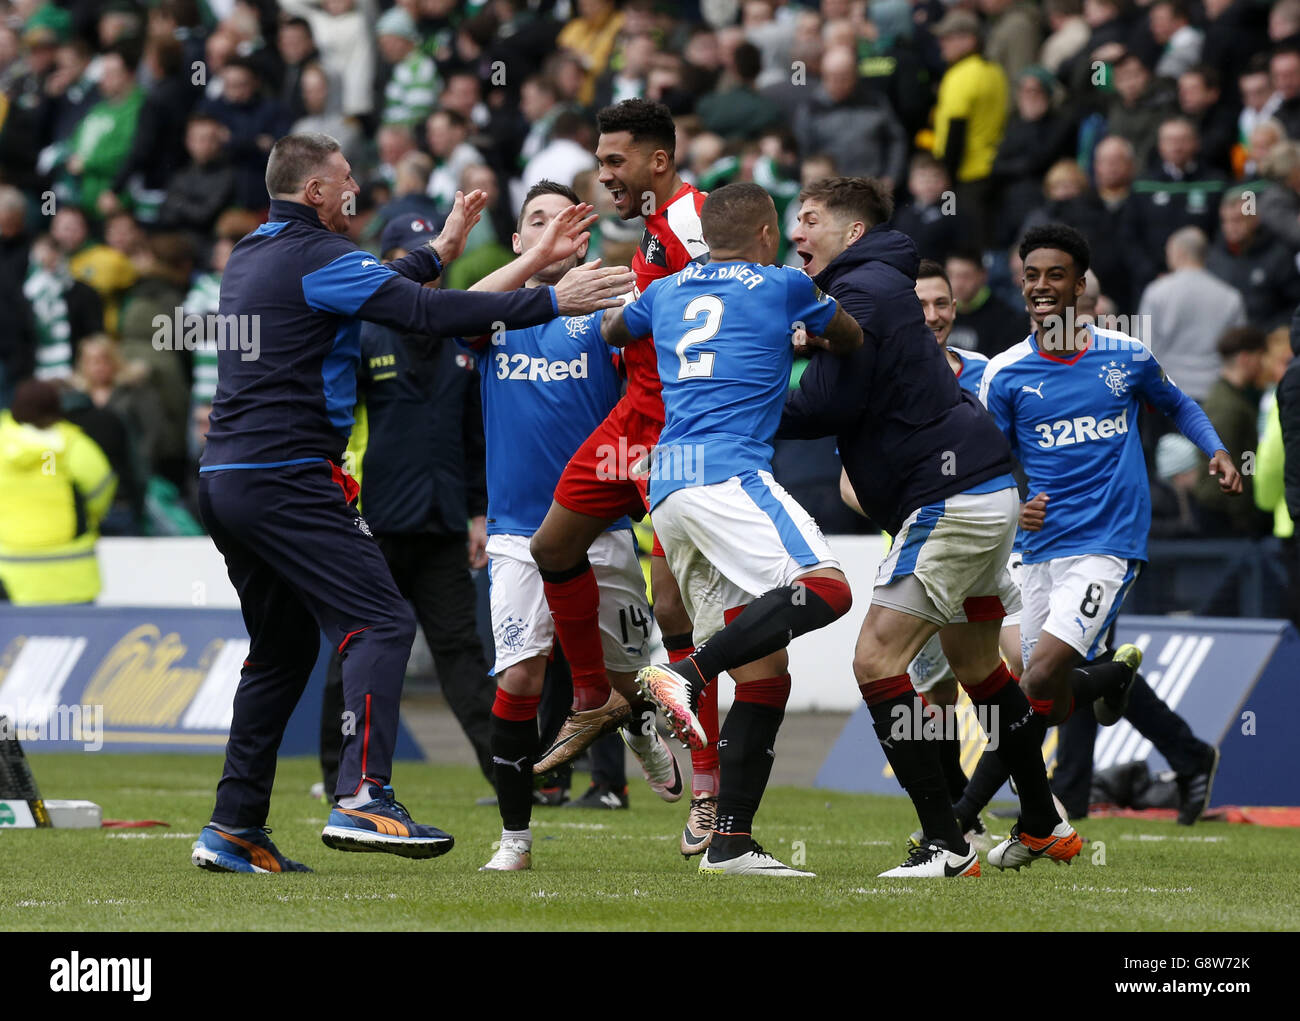 Les joueurs des Rangers ont fait appel au gardien de but Wes Foderingham pour célébrer la victoire après le match de demi-finale de la coupe d'Écosse William Hill à Hampden Park, Glasgow. Banque D'Images